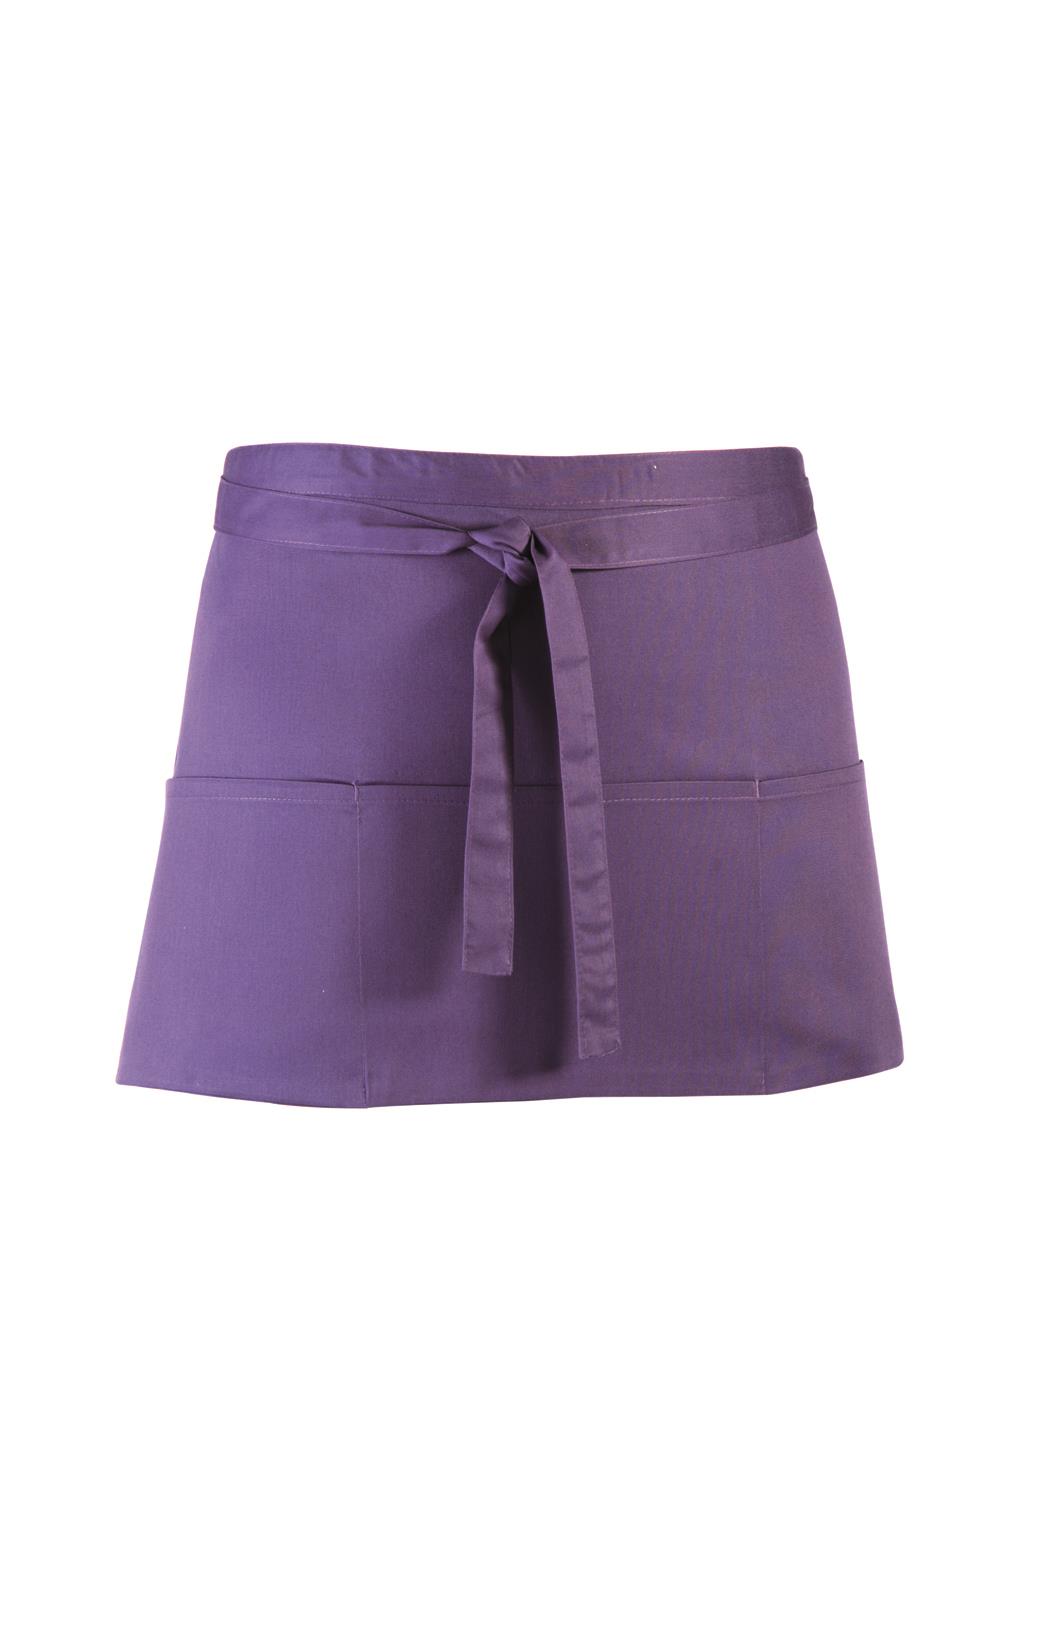 Colours counter apron with 3 pockets 60 x 33 cm Premier® Purple (Pantone 269)